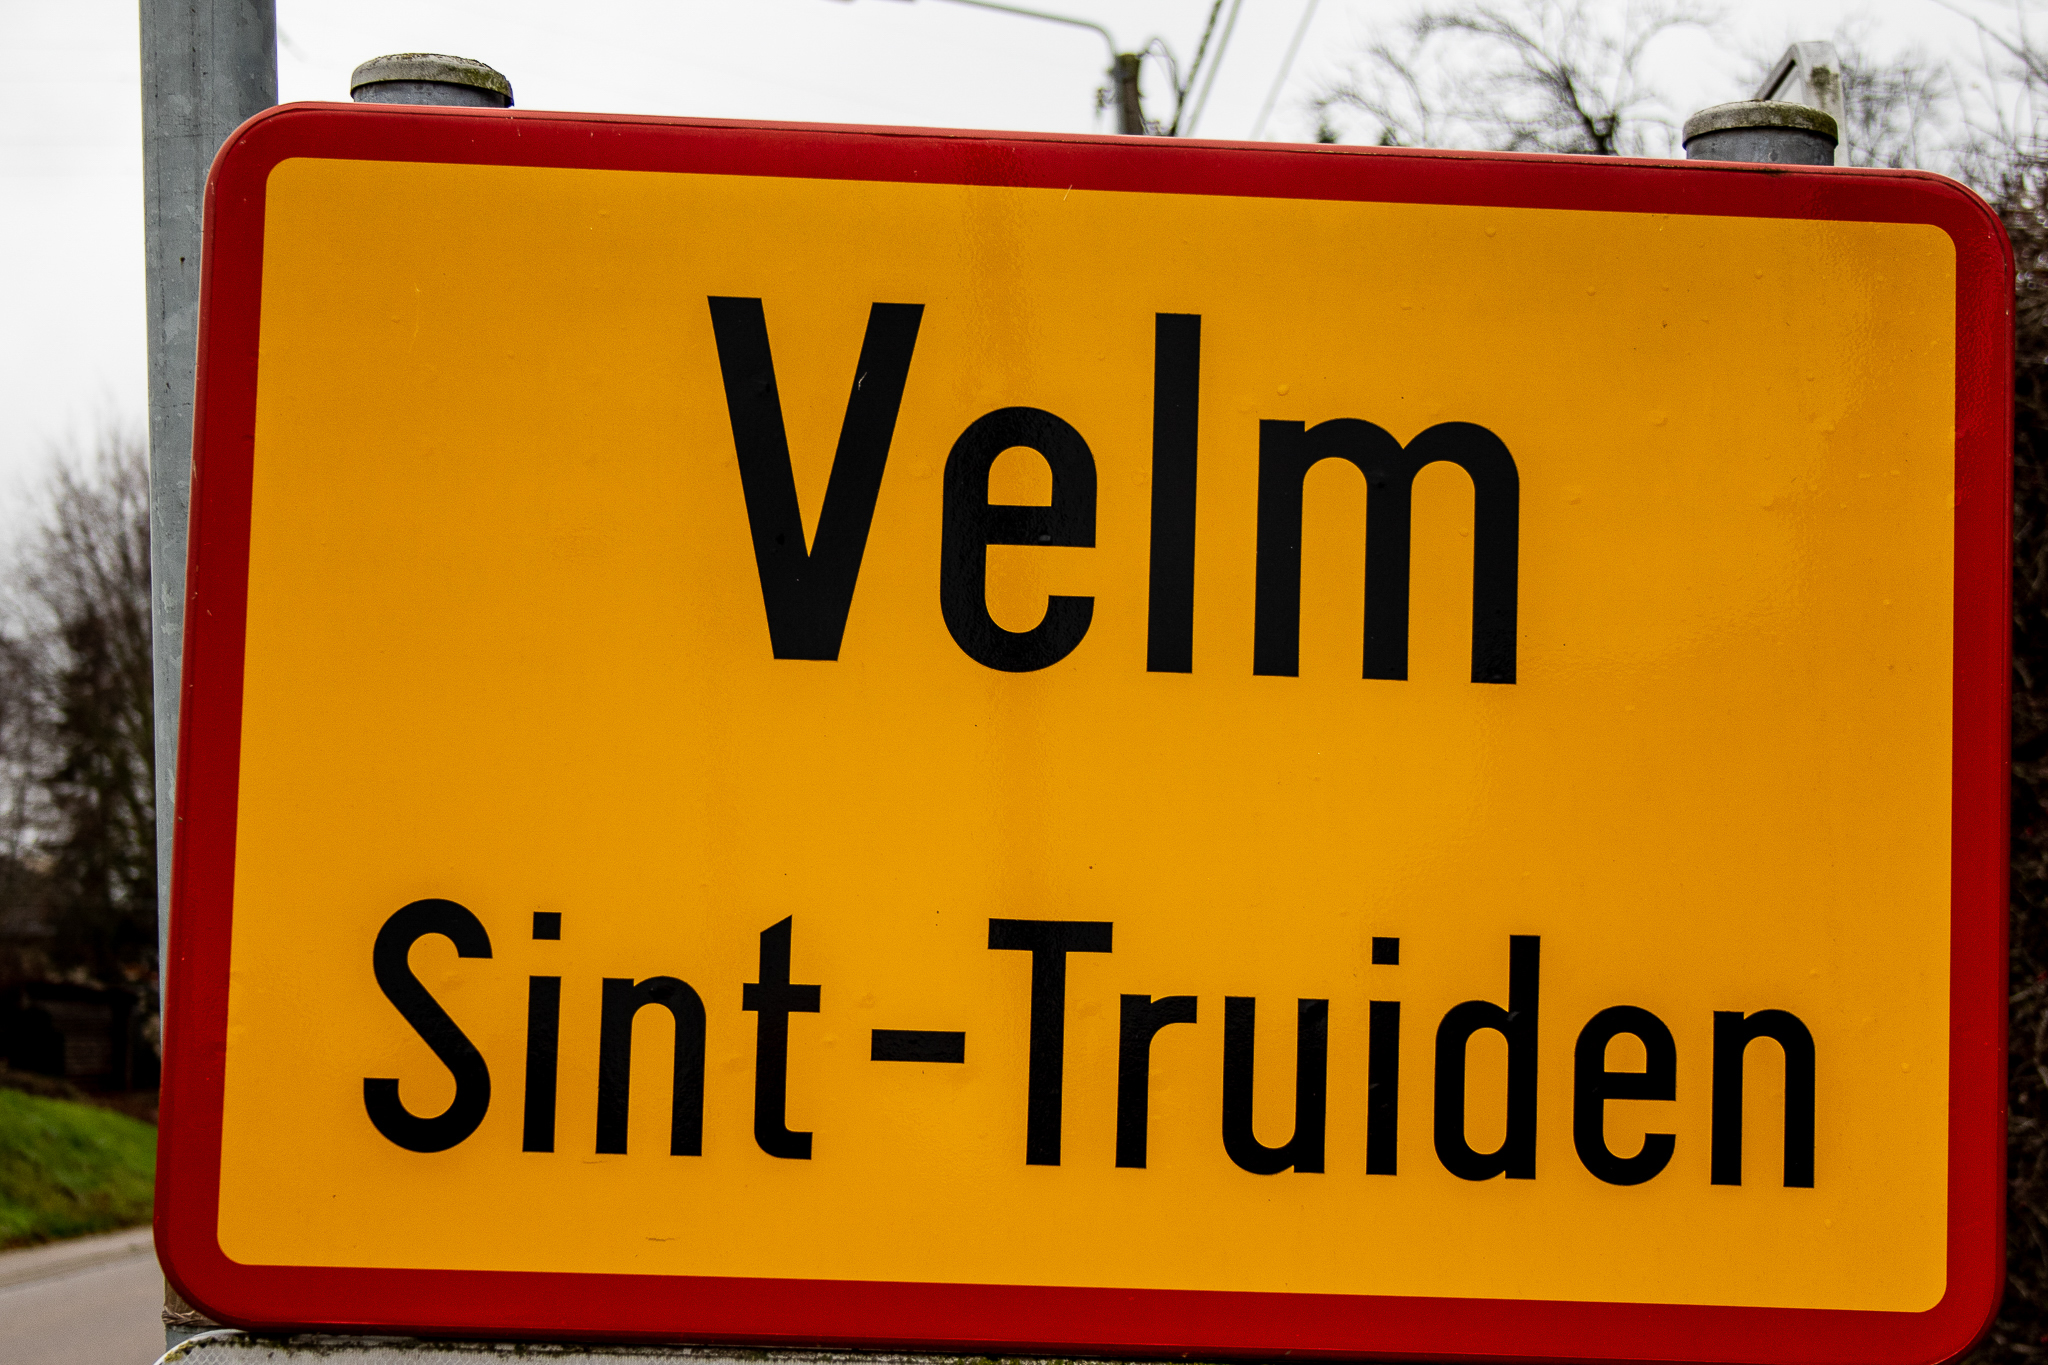 Crisismanagement op site van Triamant Velm door lokaal bestuur en Eerstelijnszone Haspengouw